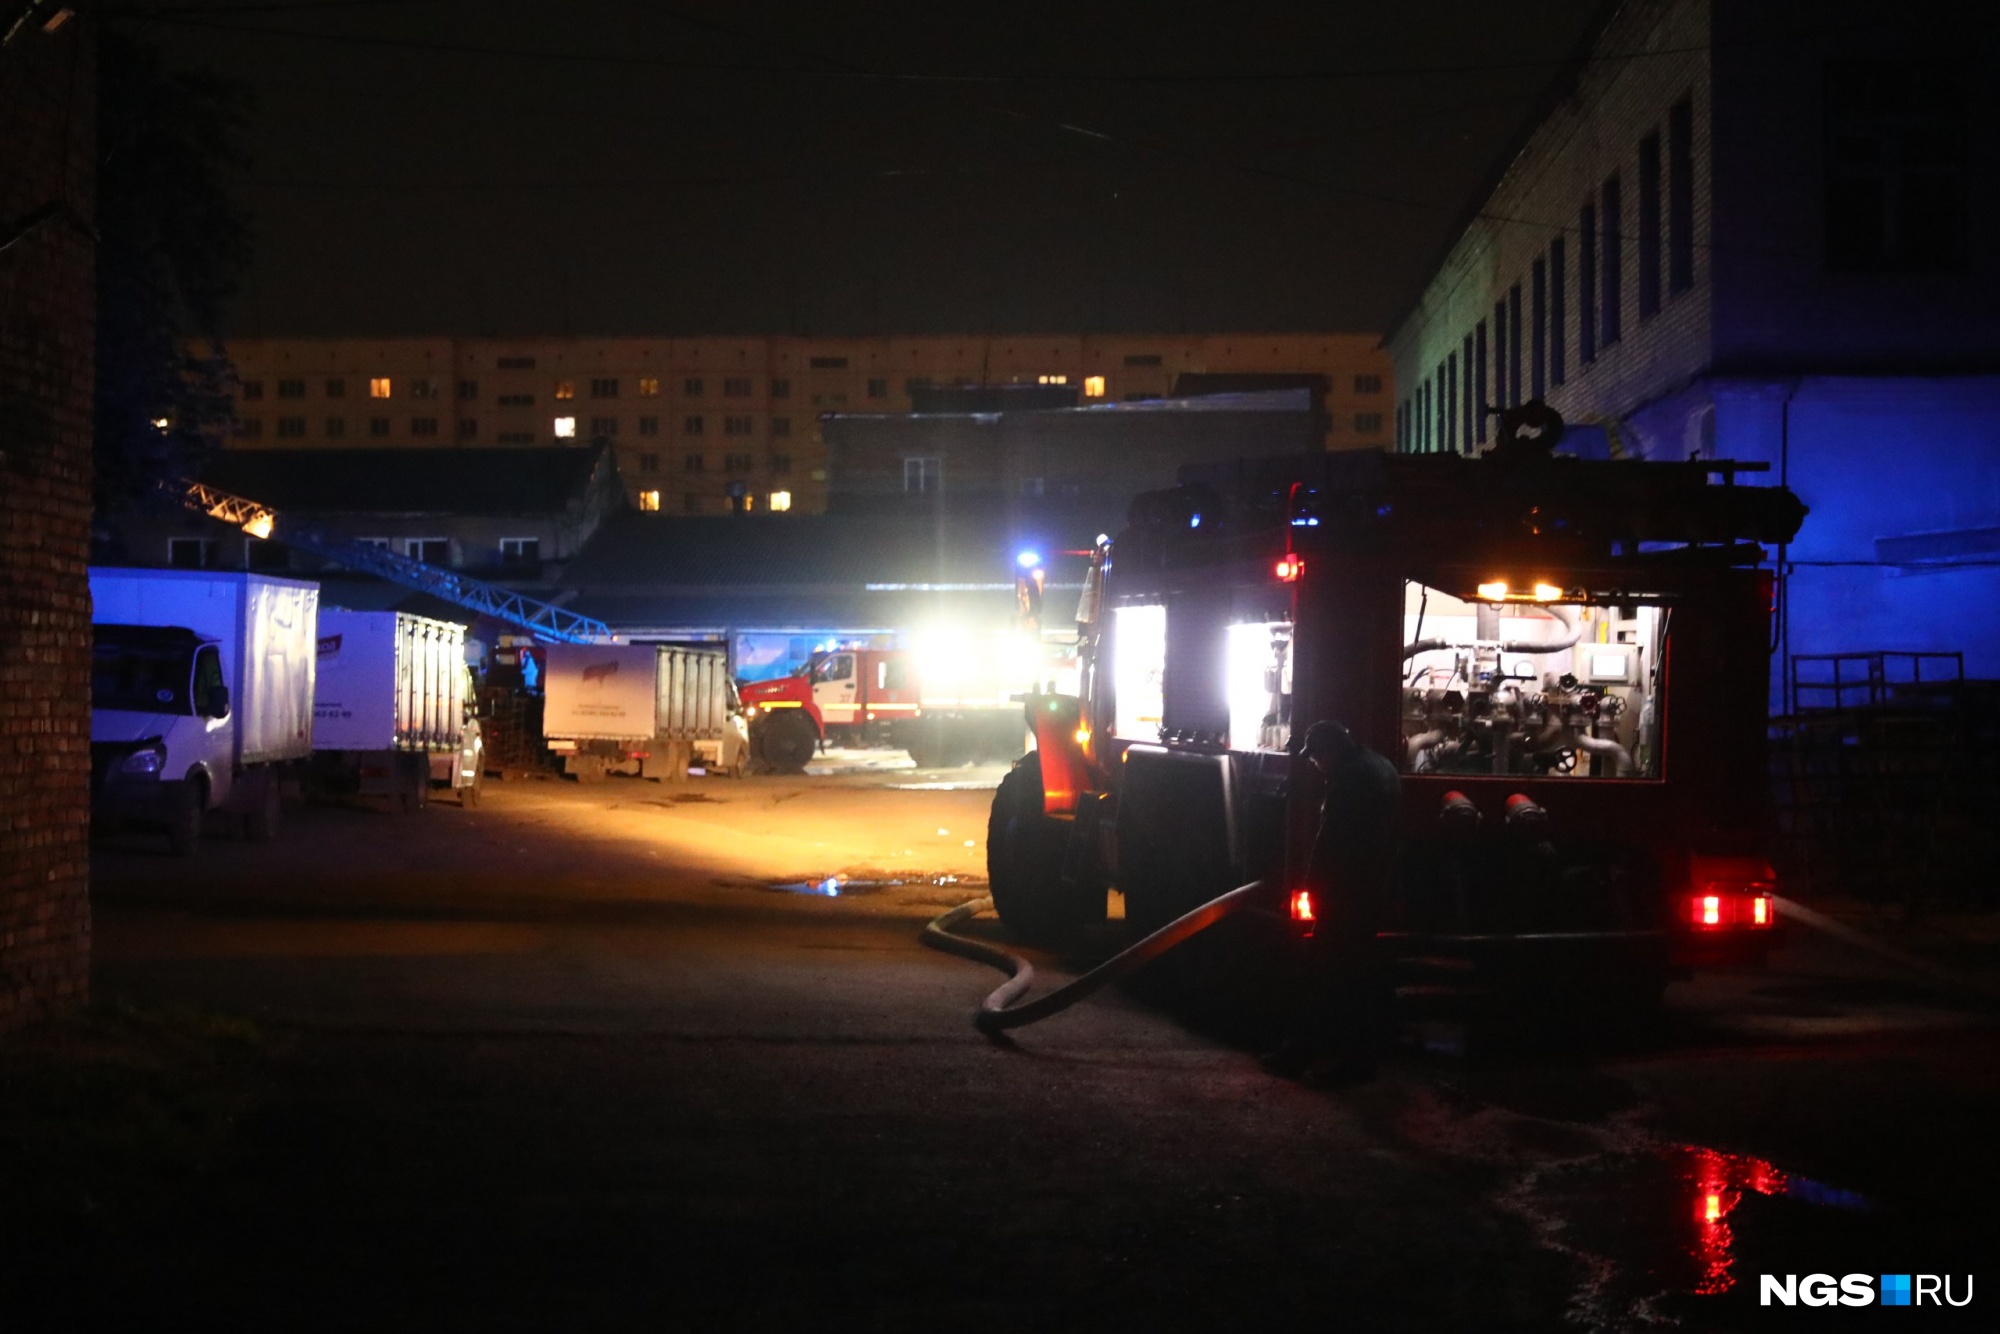 Полтора часа ликвидировали открытый огонь: в Новосибирске загорелся хлебозавод — фоторепортаж с места